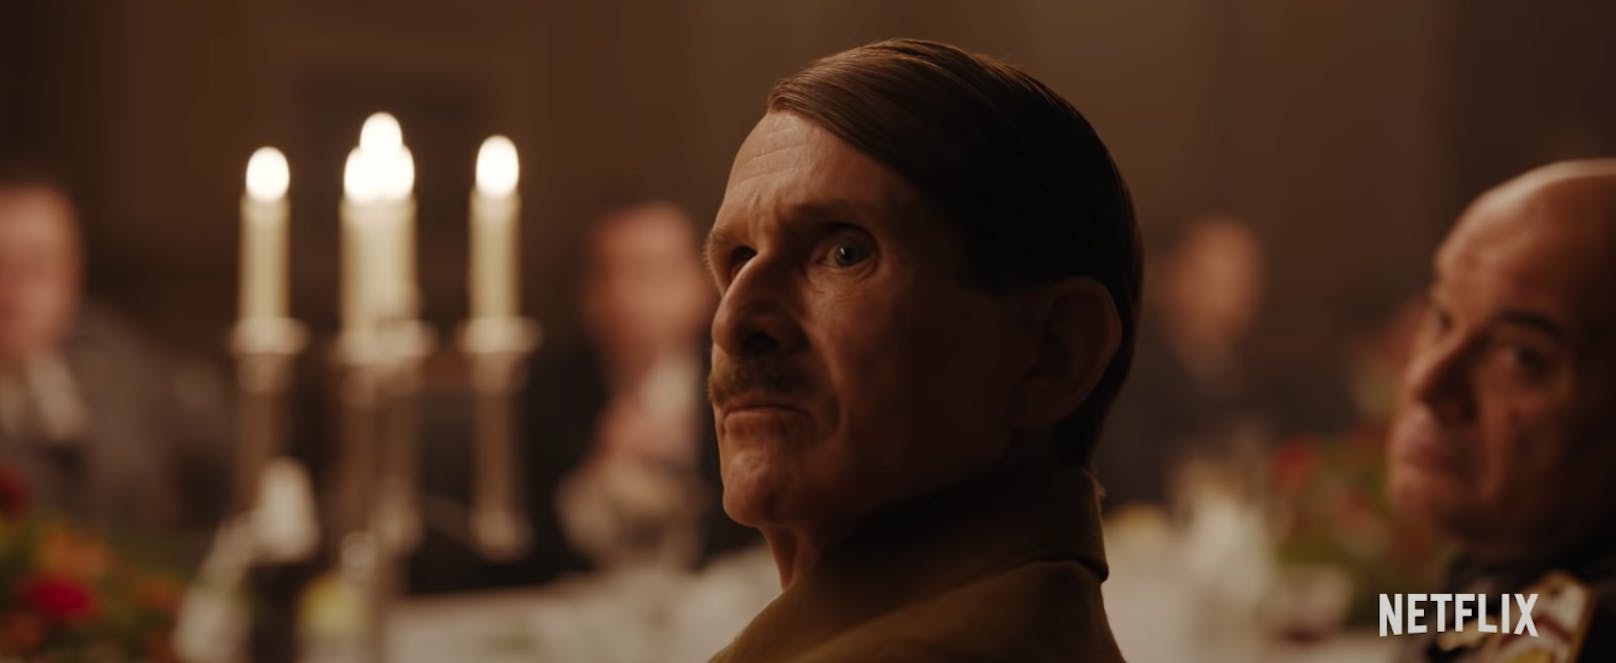 Für Regisseur Christian Schwochow war die Rolle des Adolf Hitlers am schwierigsten zu besetzen.